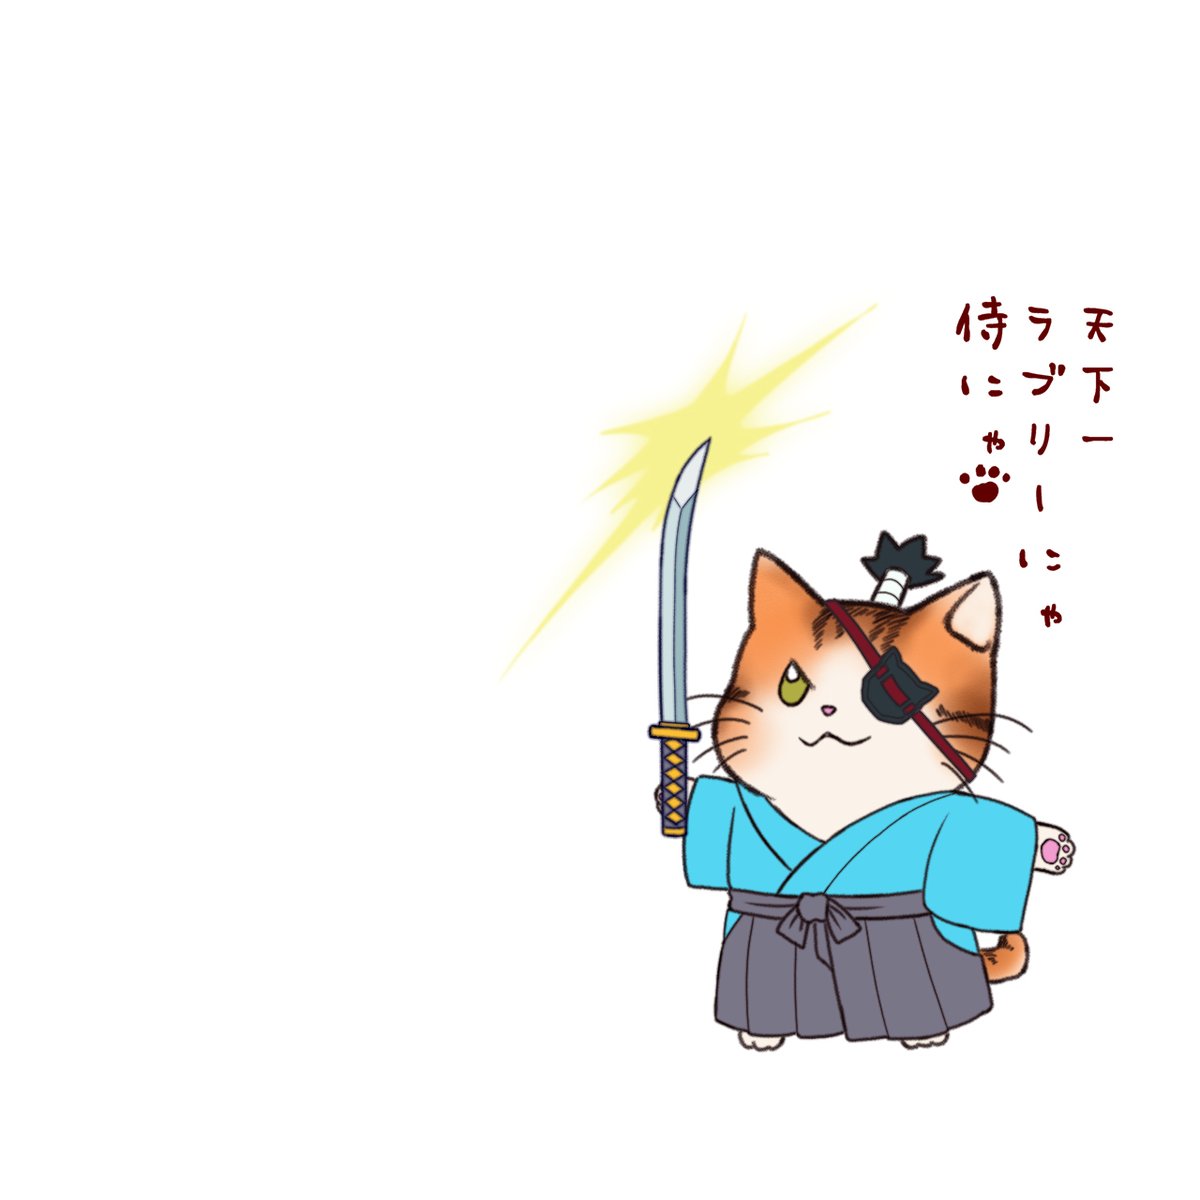 Minatsu 漫画連載中 猫侍 いつも白い猫を連れてる心の中ではめっちゃ喋る侍ではありません 猫 イラスト T Co K22yo3h5au Twitter